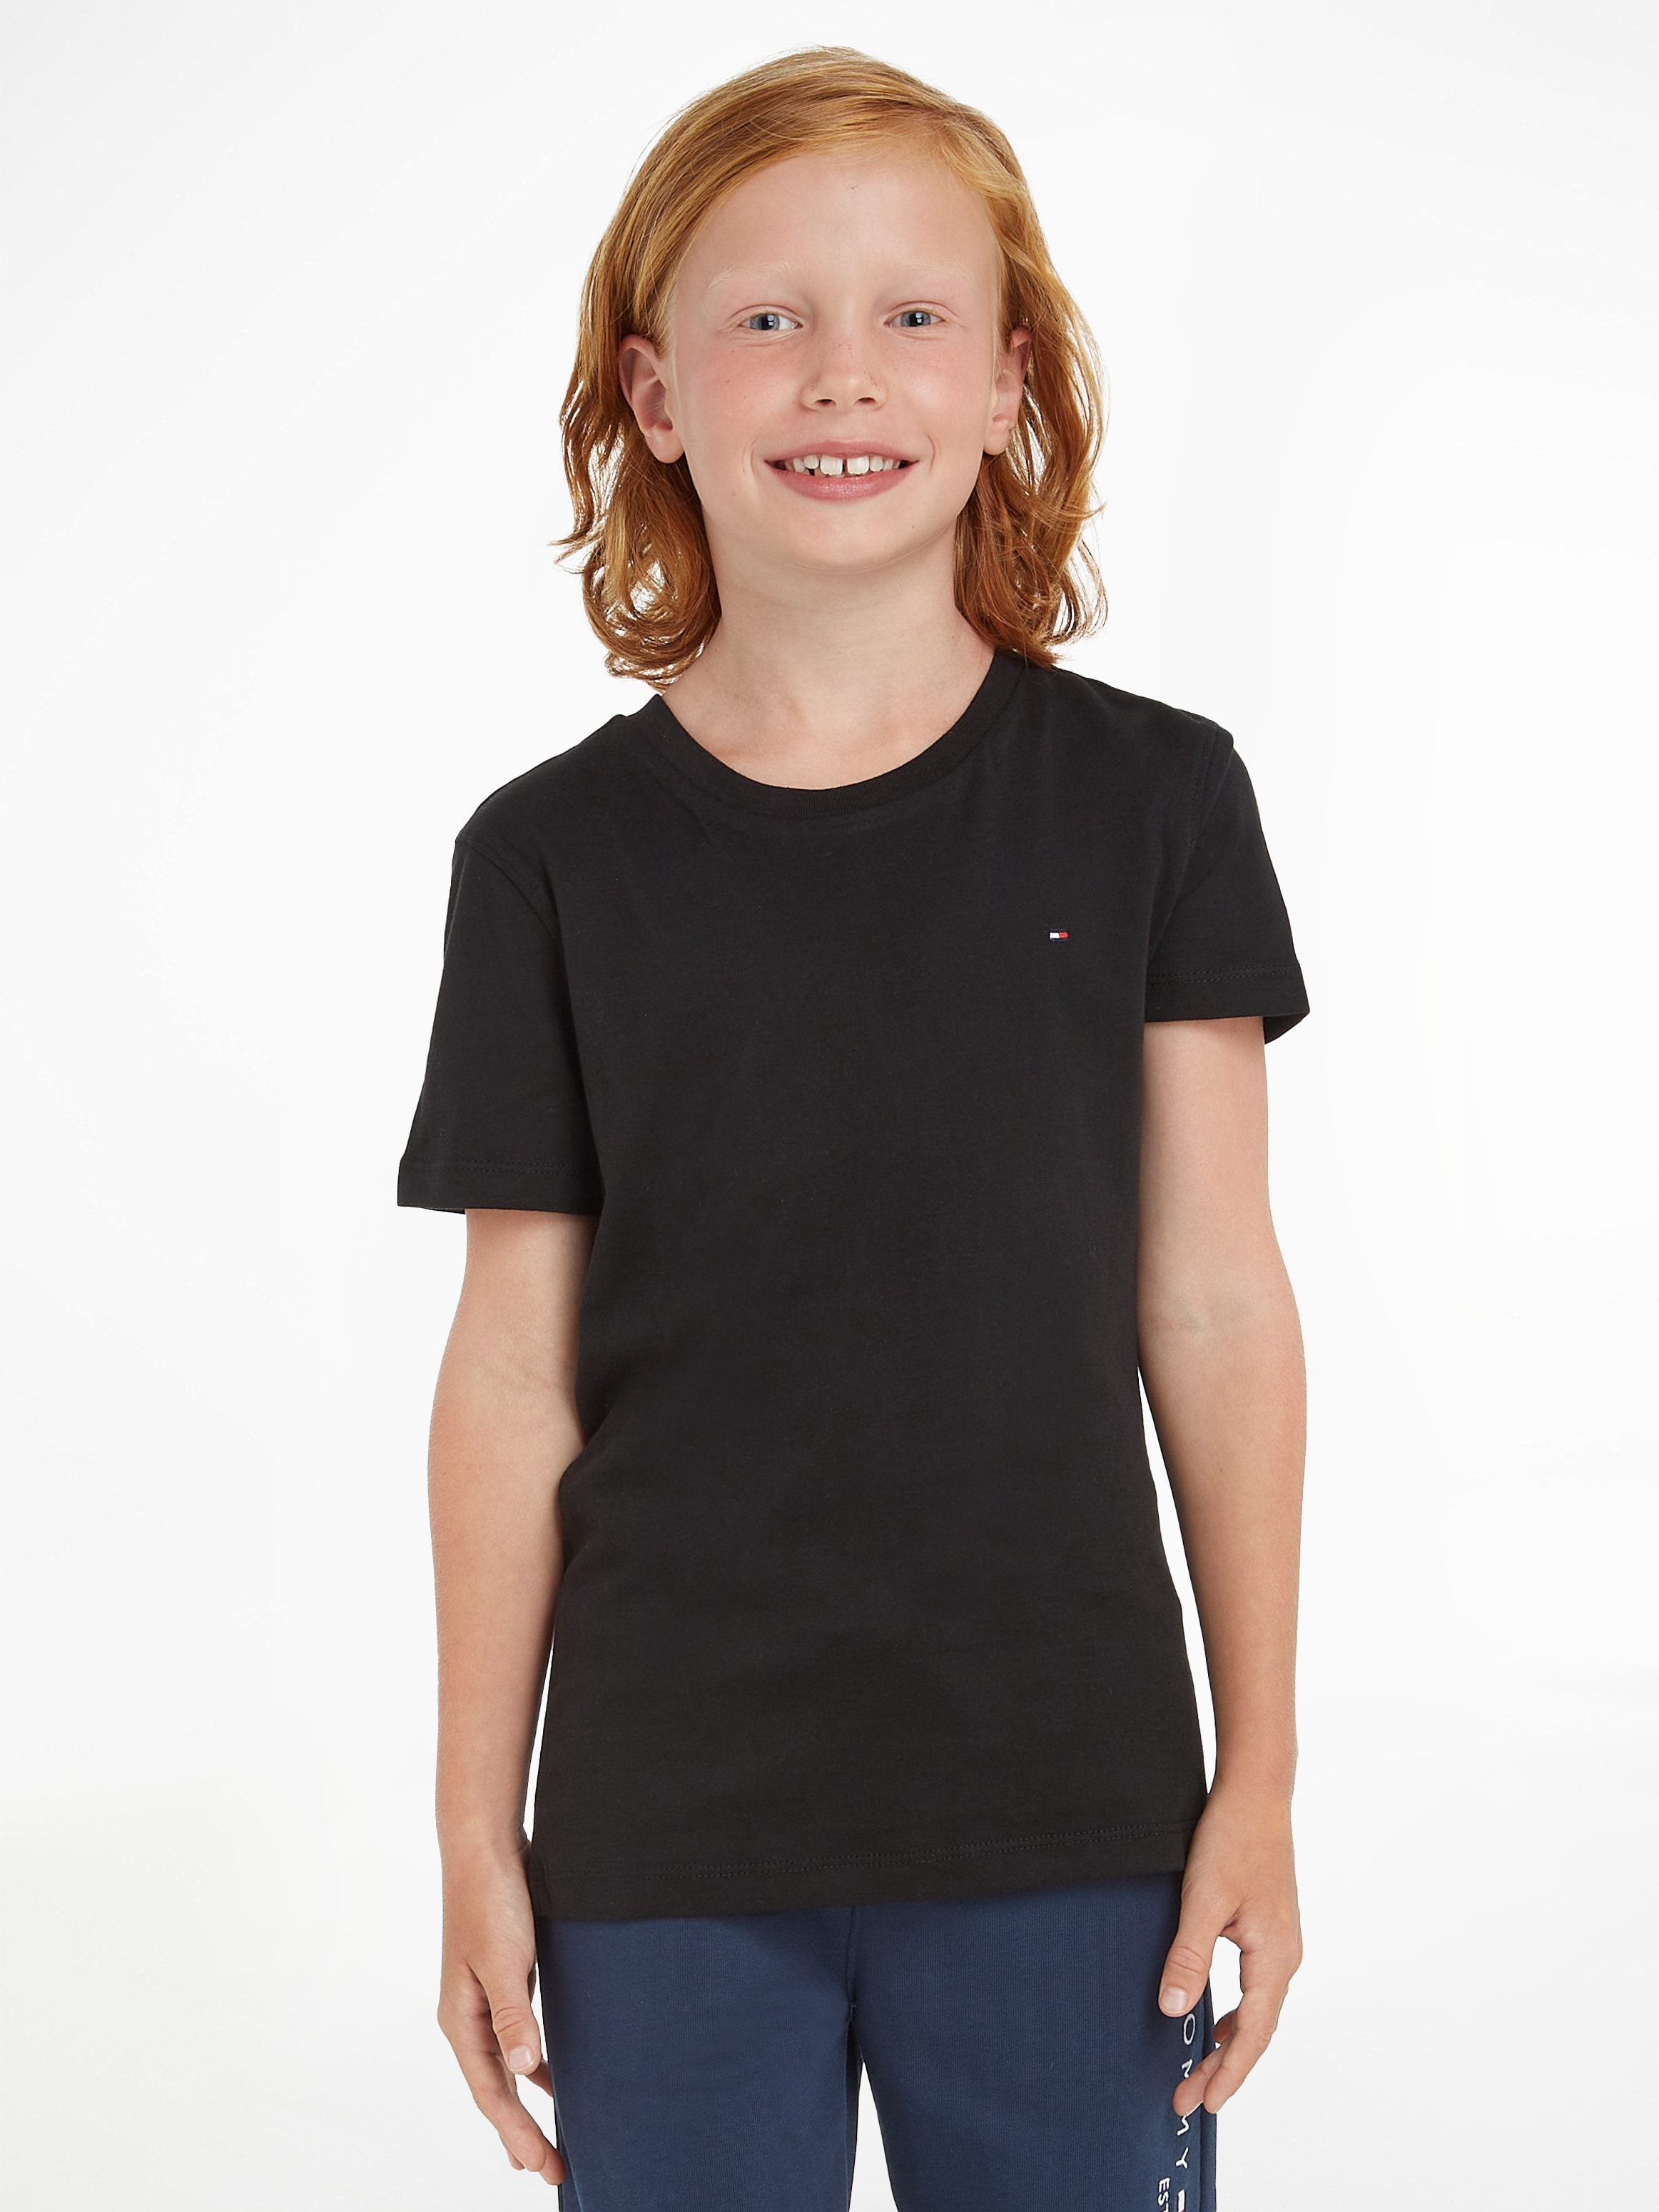 Tommy Hilfiger T-Shirt »BOYS BASIC CN KNIT«, Kinder Kids Junior MiniMe,für  Jungen kaufen bei OTTO